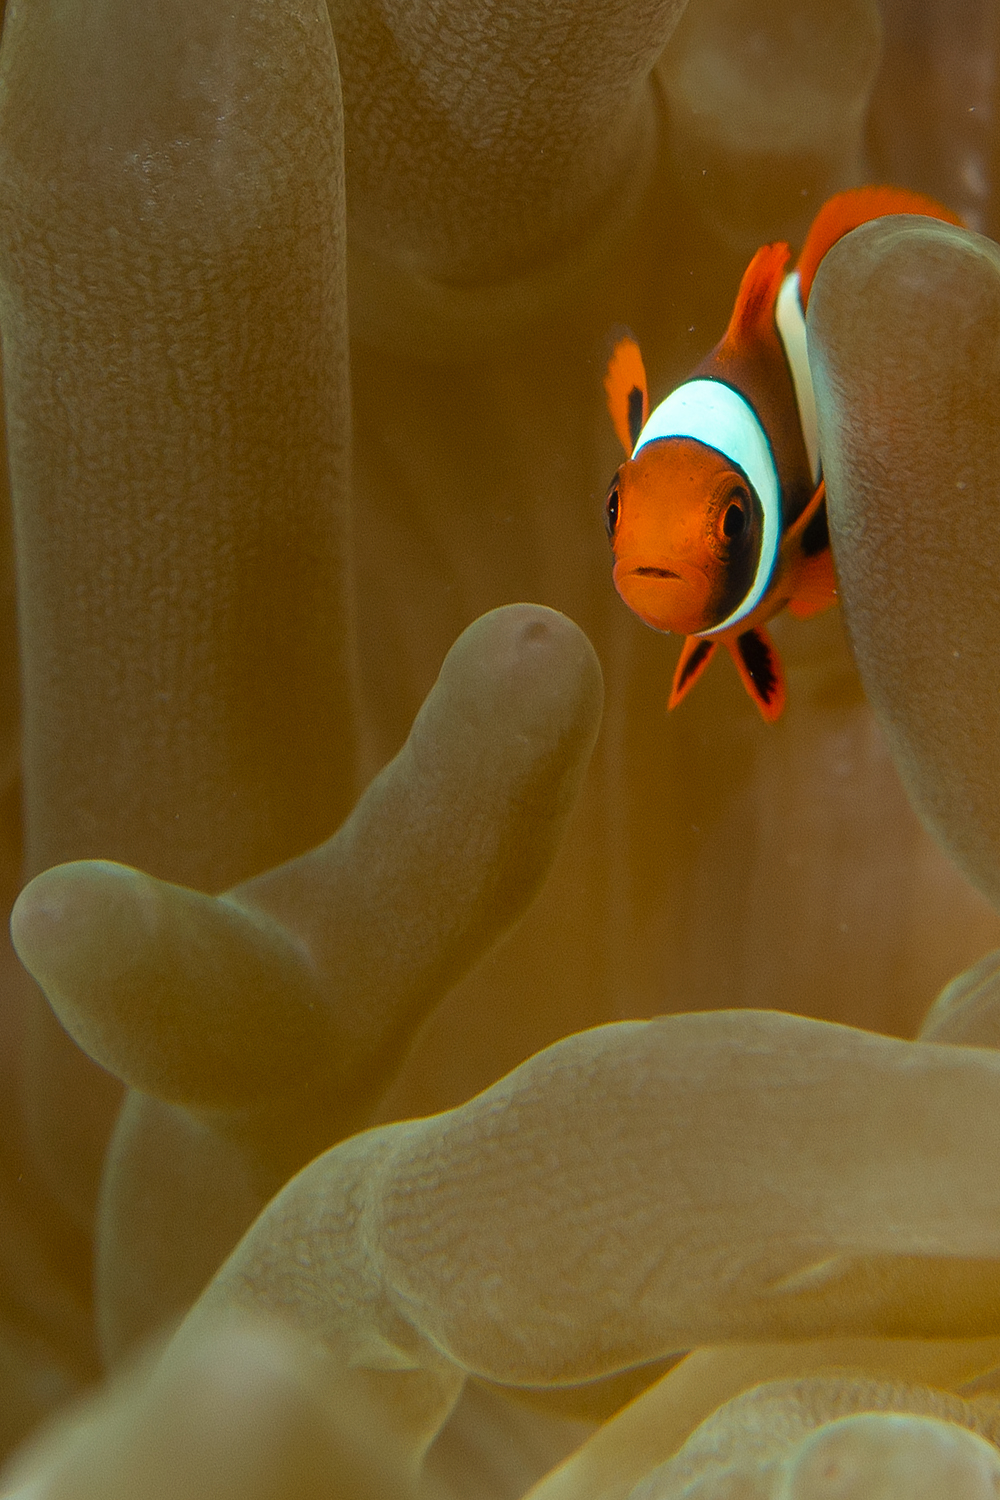 Nemo as a newborn...